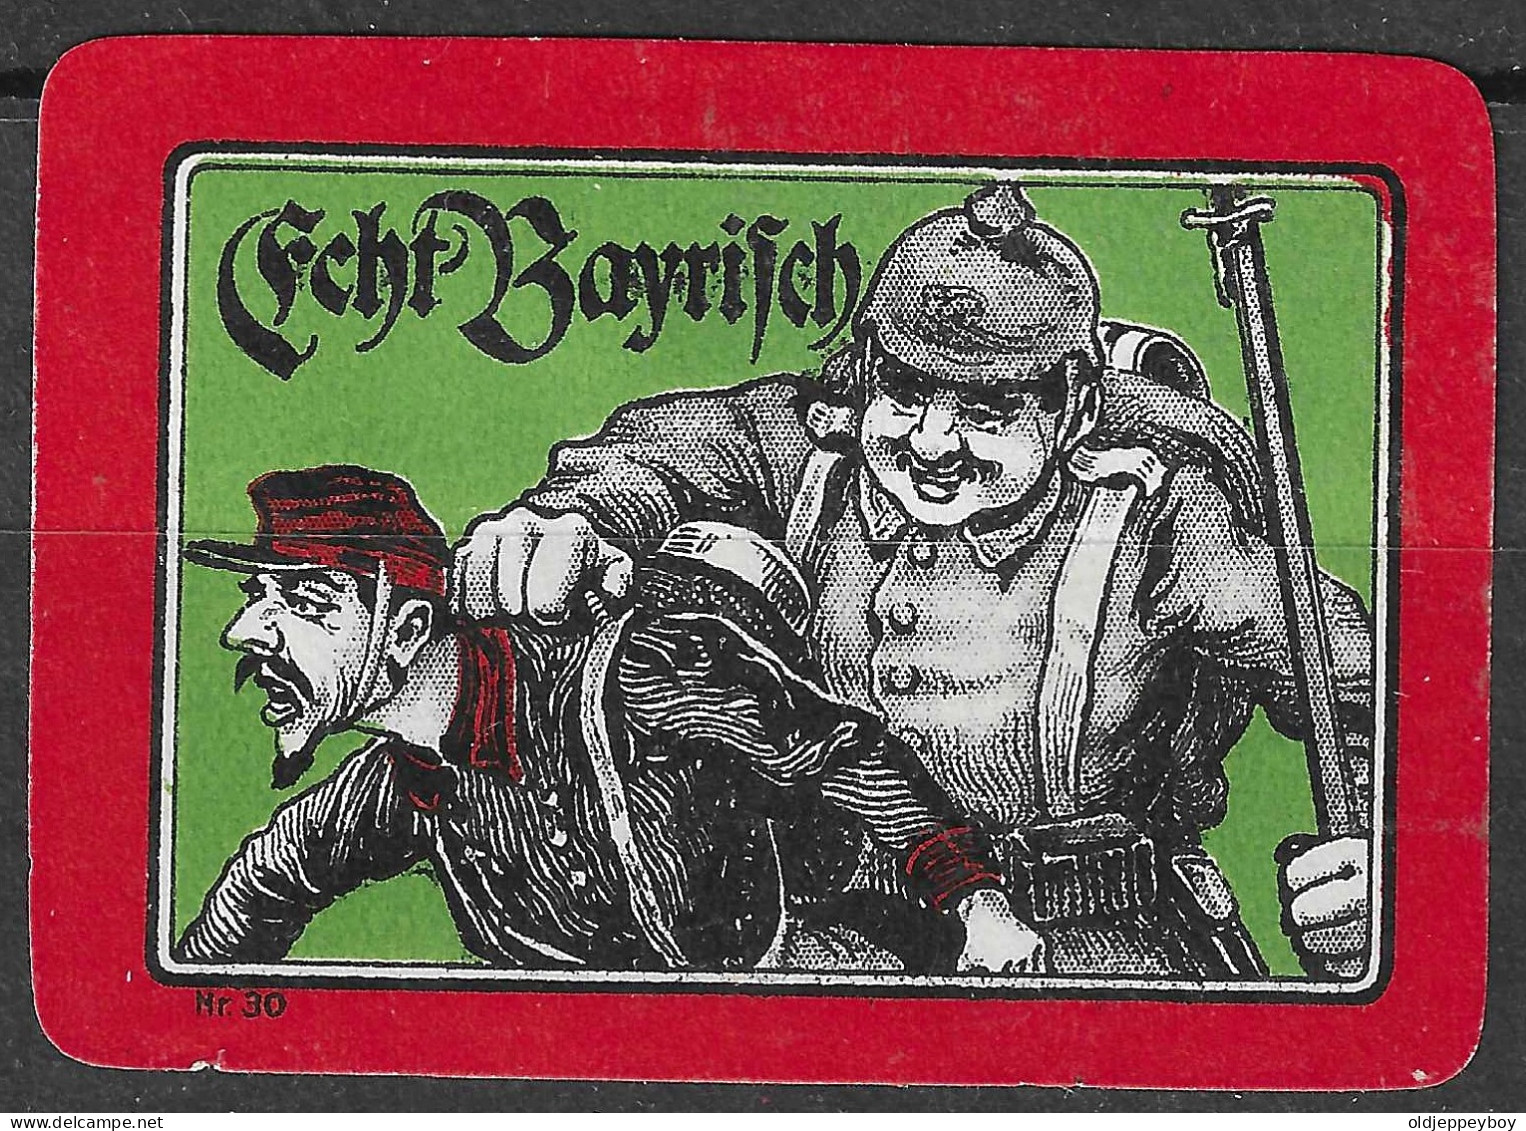 1914 DEUTSCHLAND WW1 GERMANY Propaganda Reklamemarke VIGNETTE Echt Bayrisch - WW1